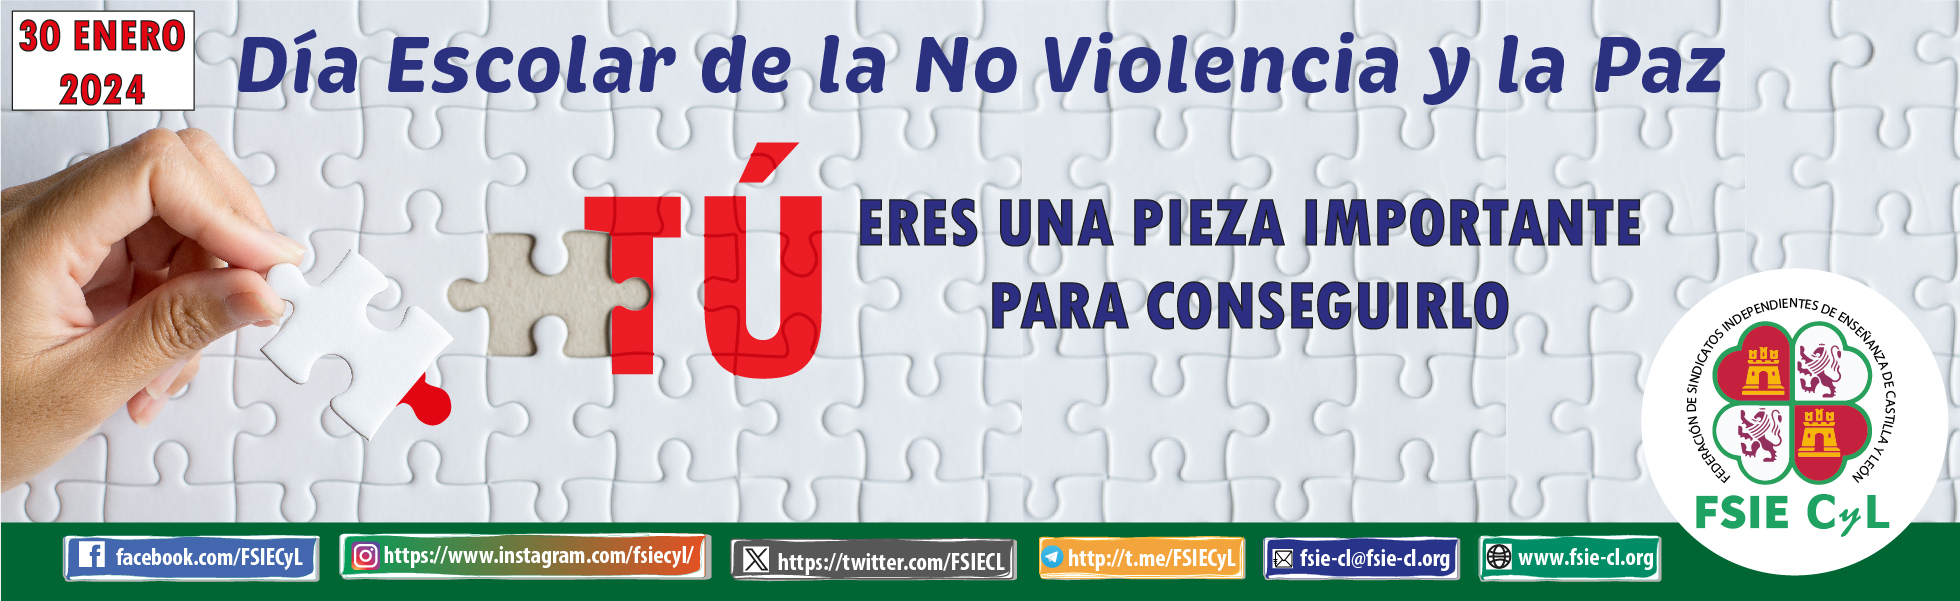 240130_ESCOLAR_NO_VIOLENCIA_Y_PAZ_WEB.jpg